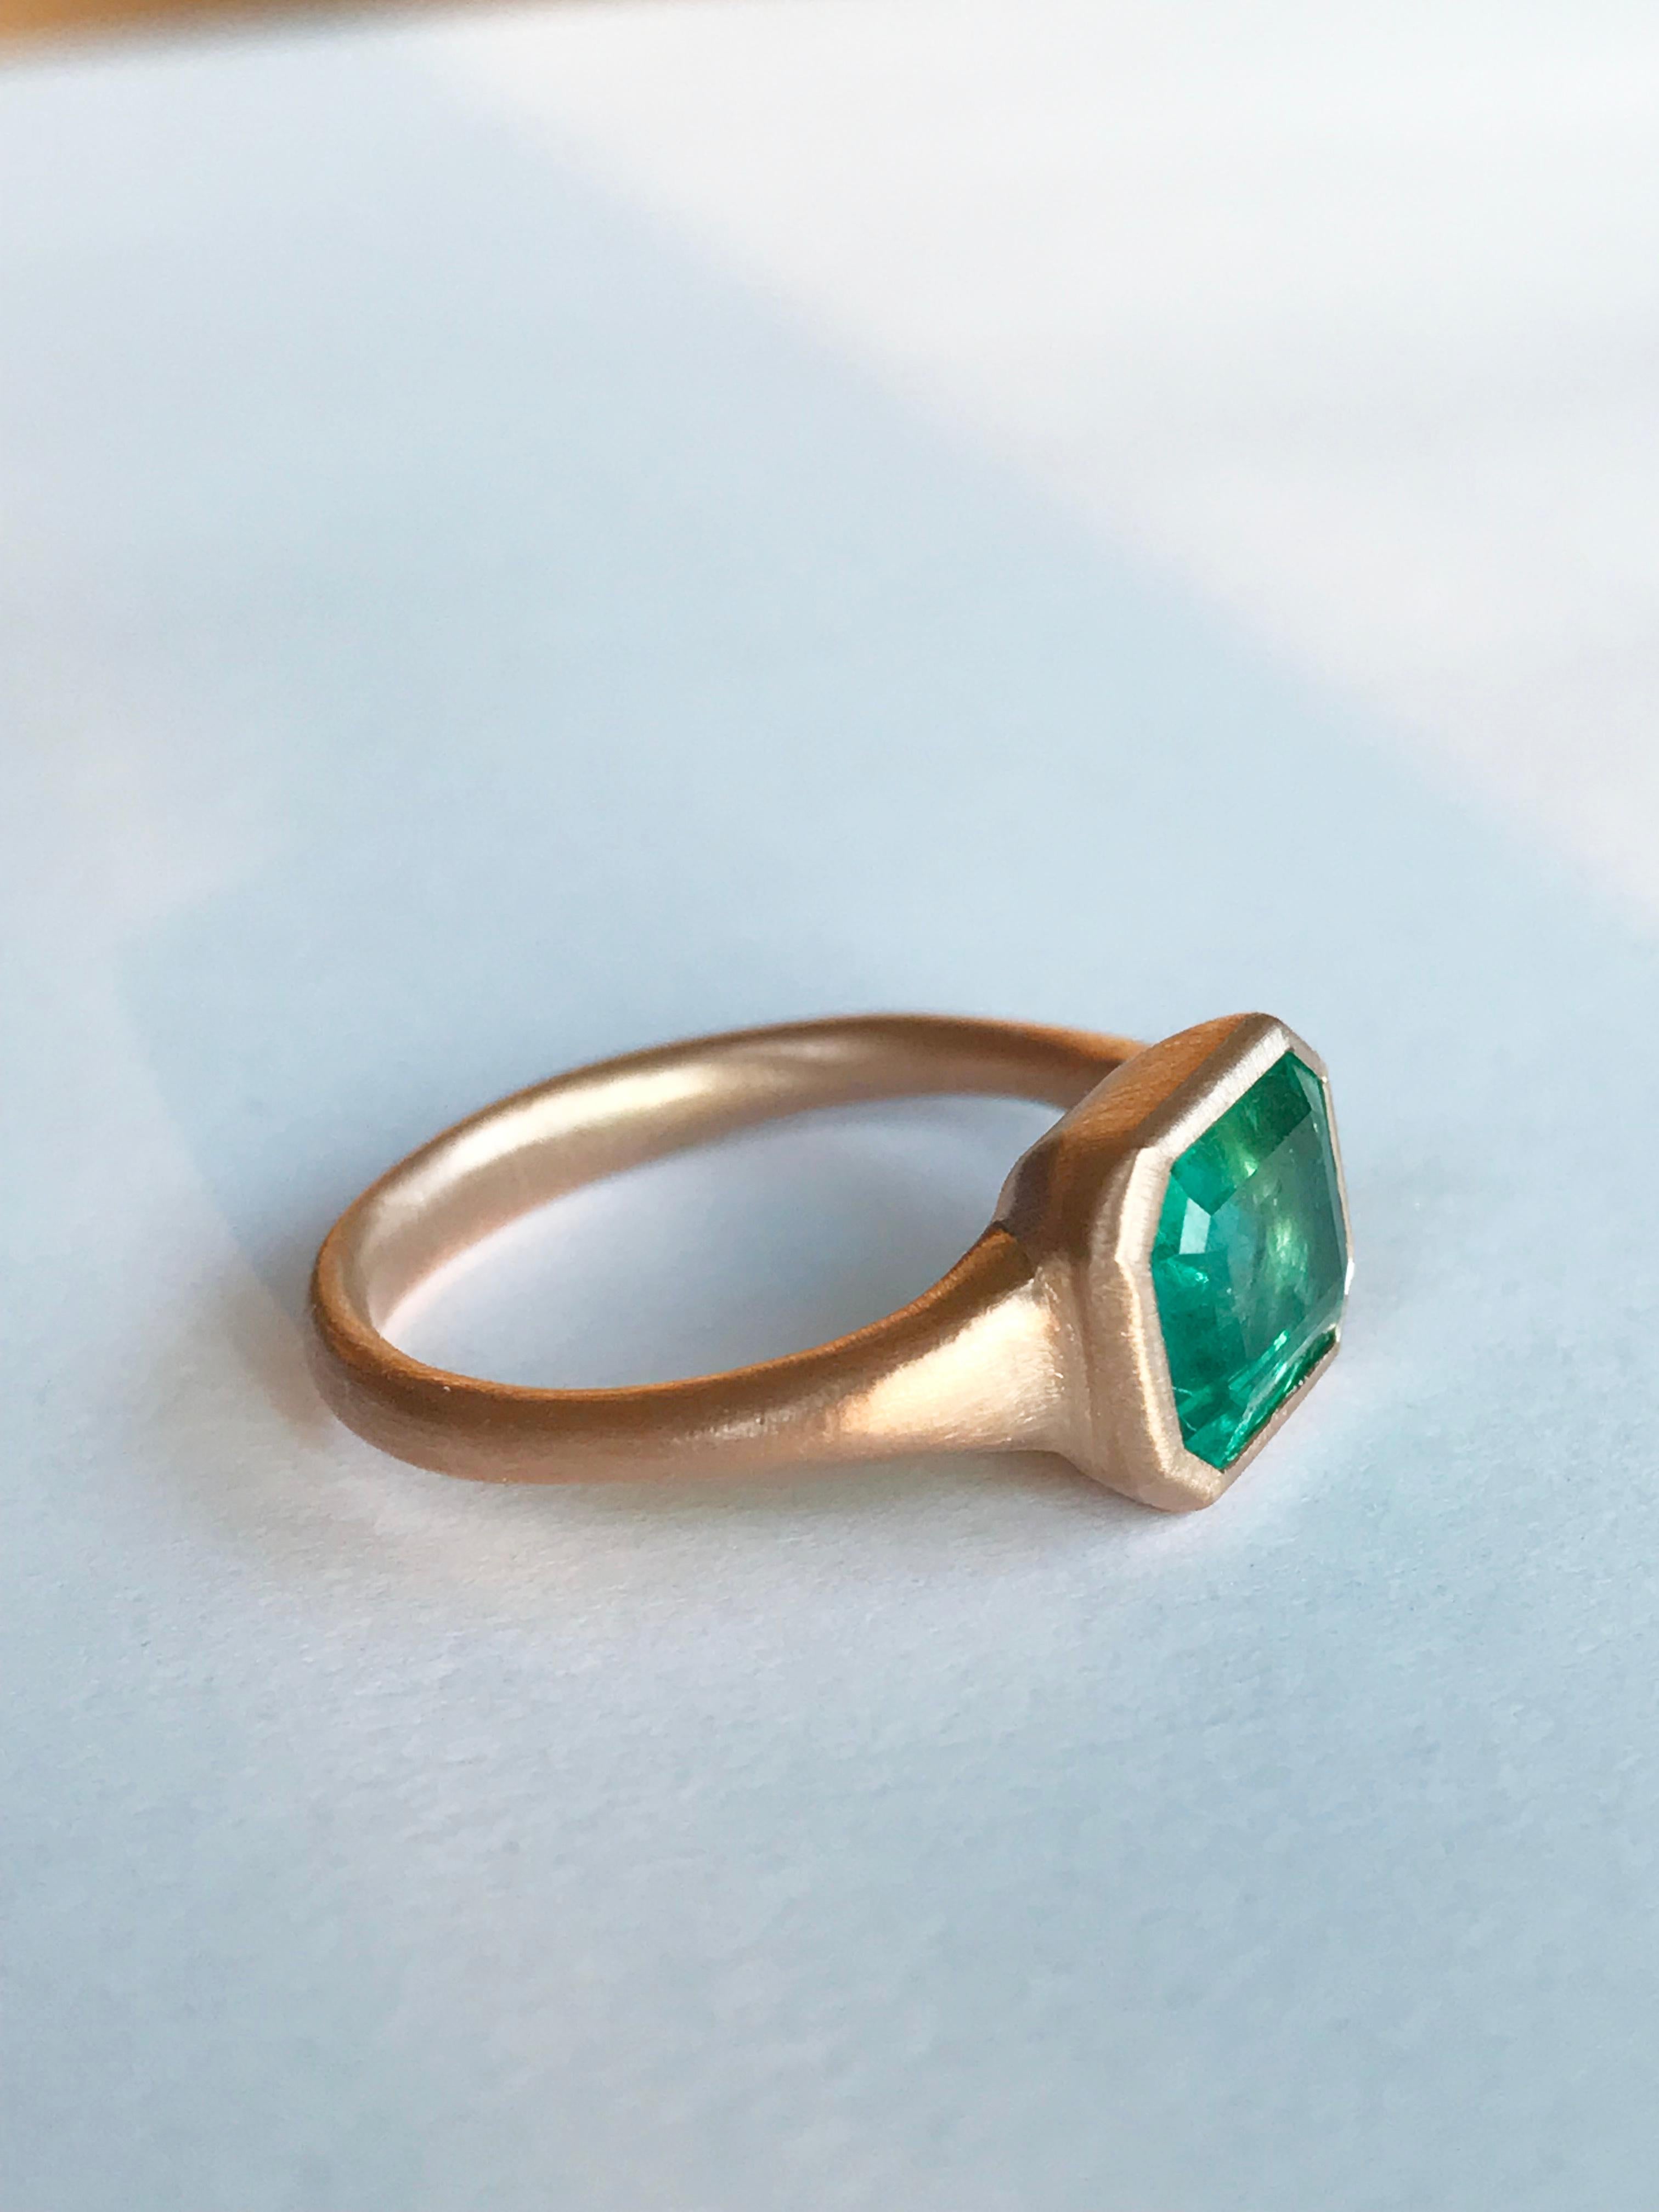 Emerald Cut Dalben 2, 38 Carat Emerald Rose Gold Ring